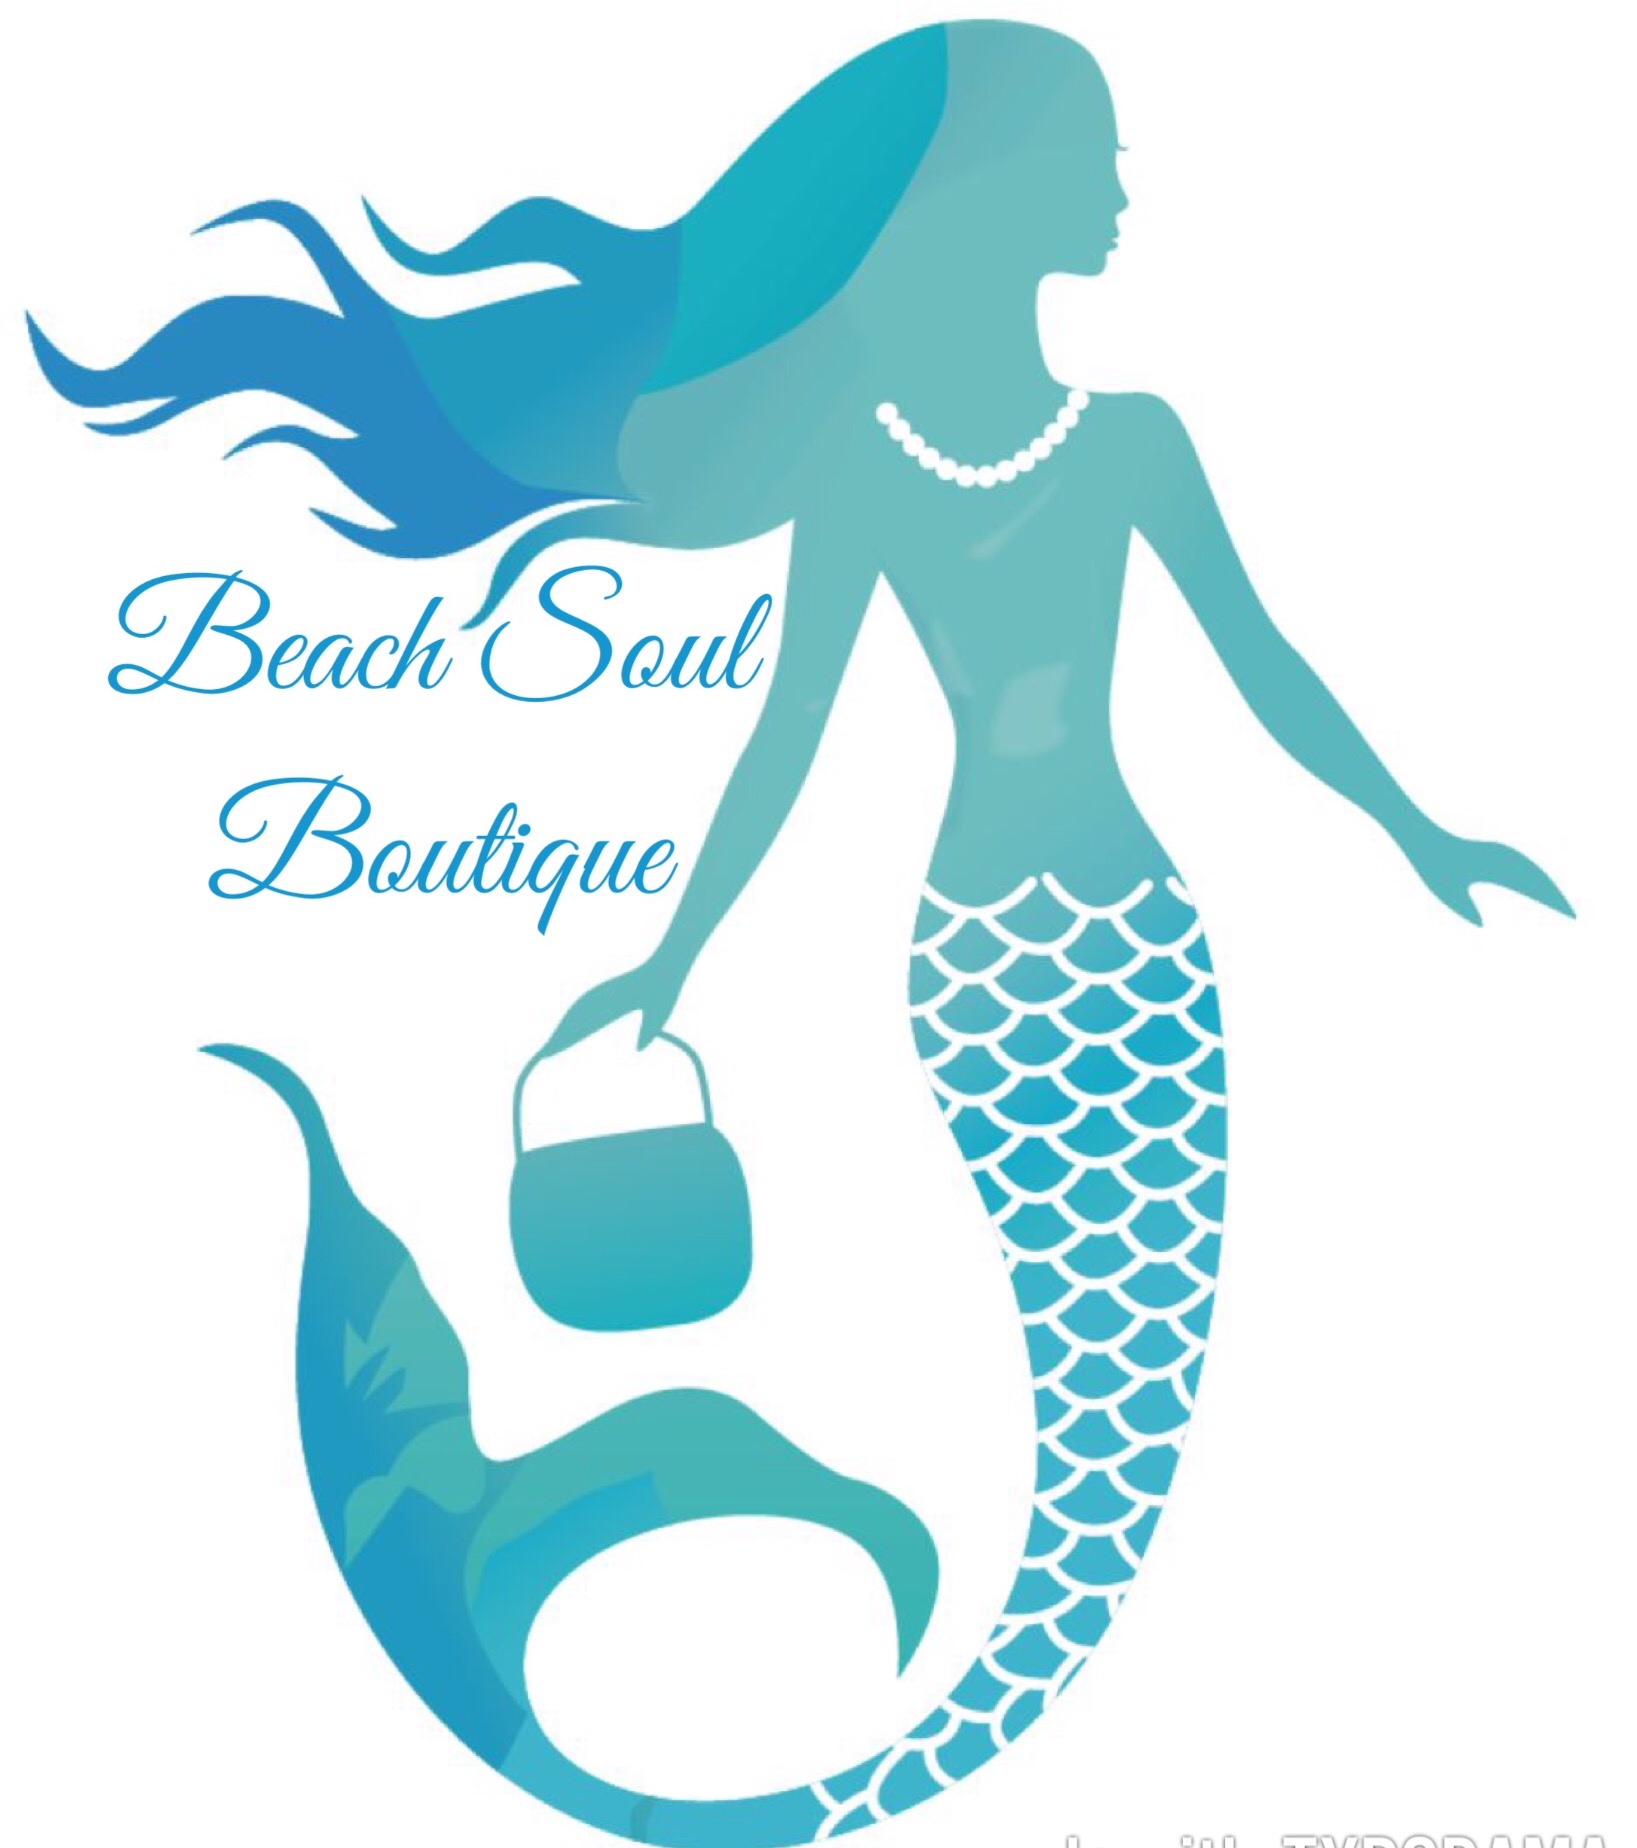 Beach Soul Boutique